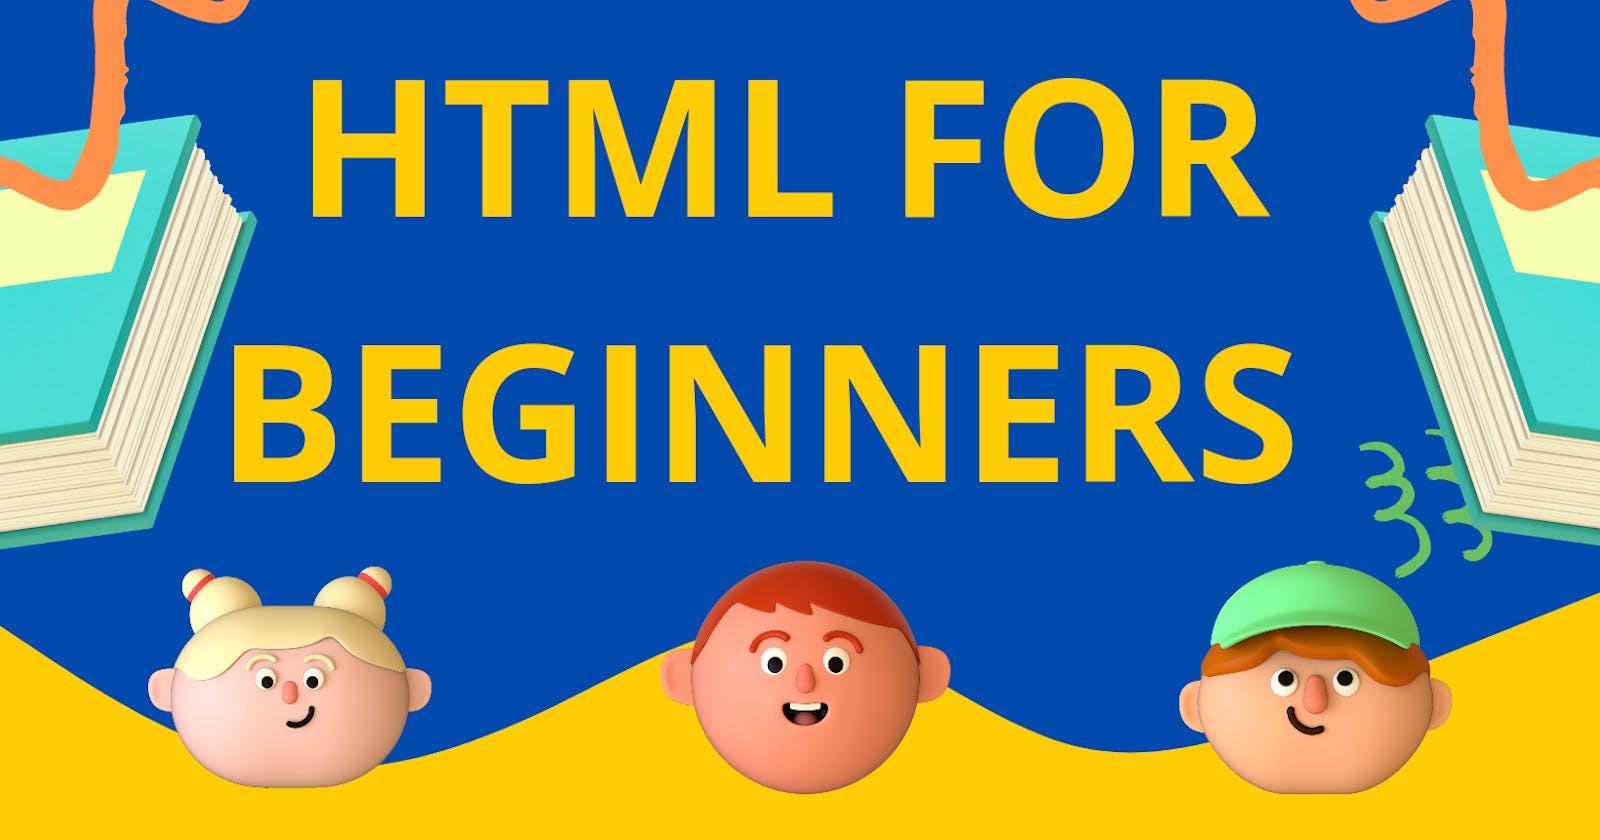 Html For Beginners !